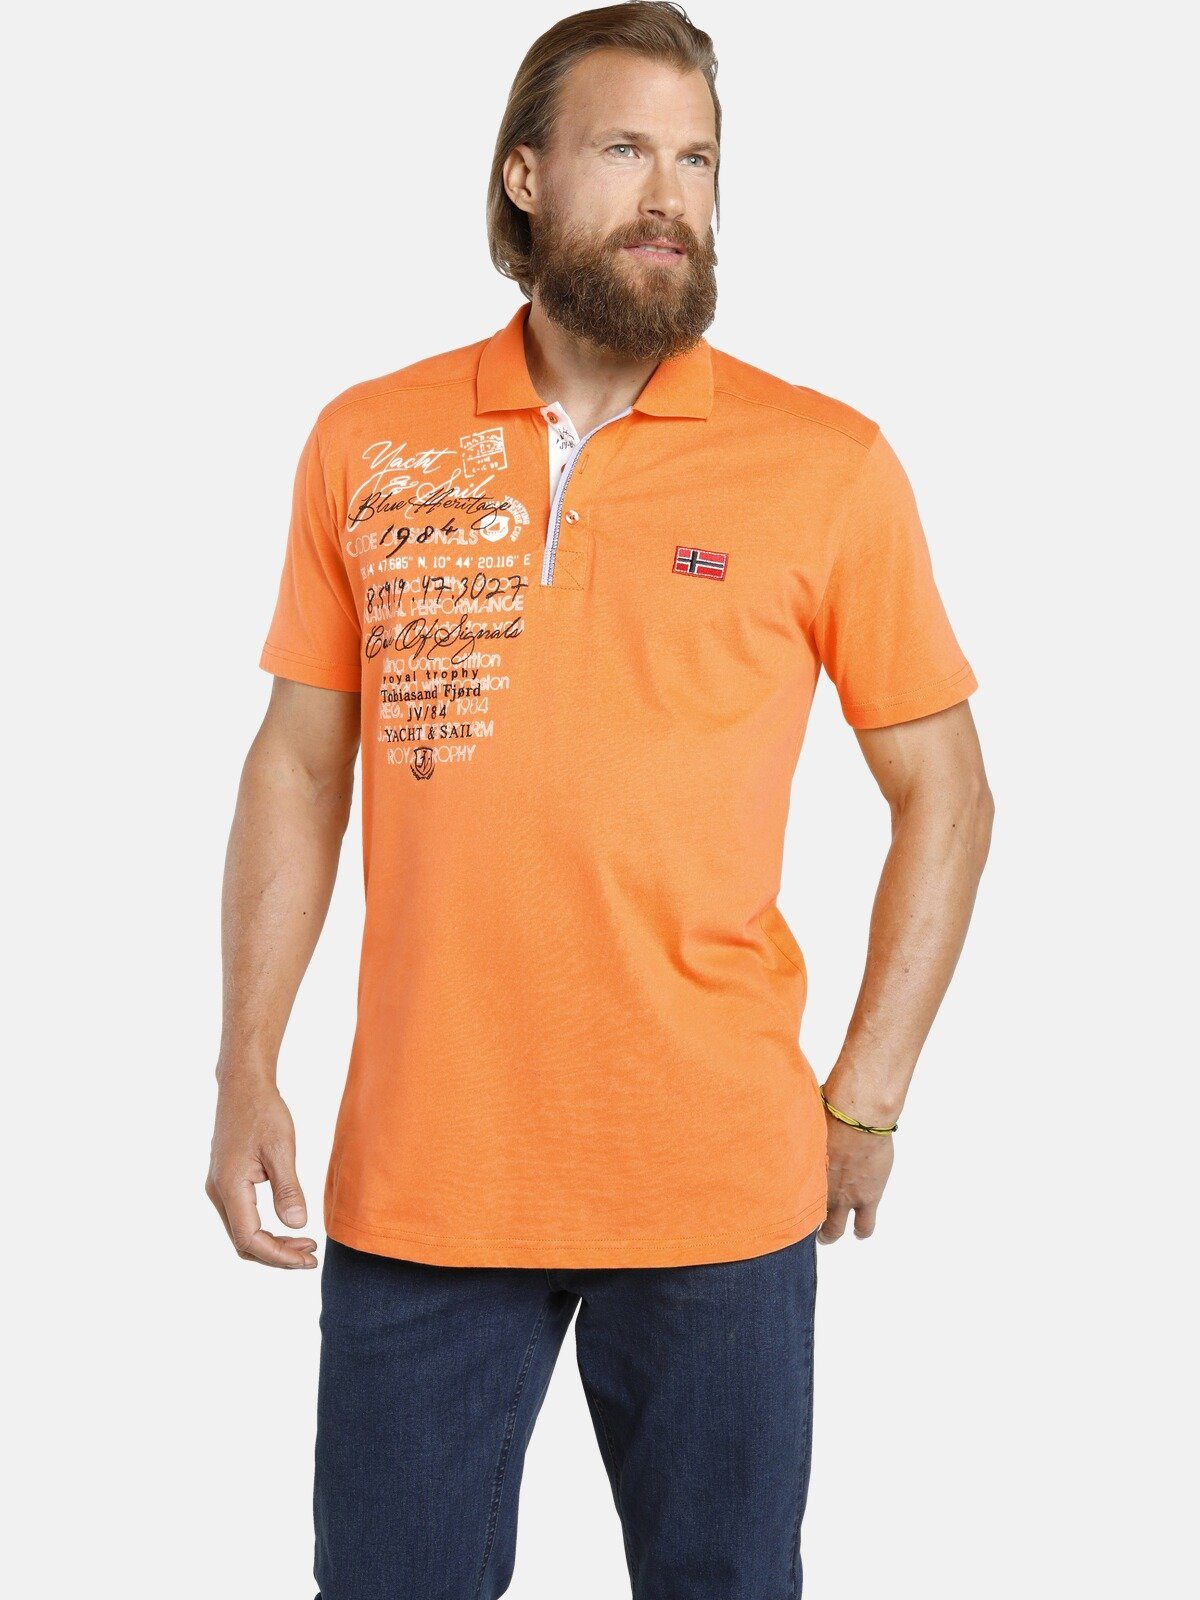 JANO Jersey-Qualität orange weicher Poloshirt Jan aus Vanderstorm